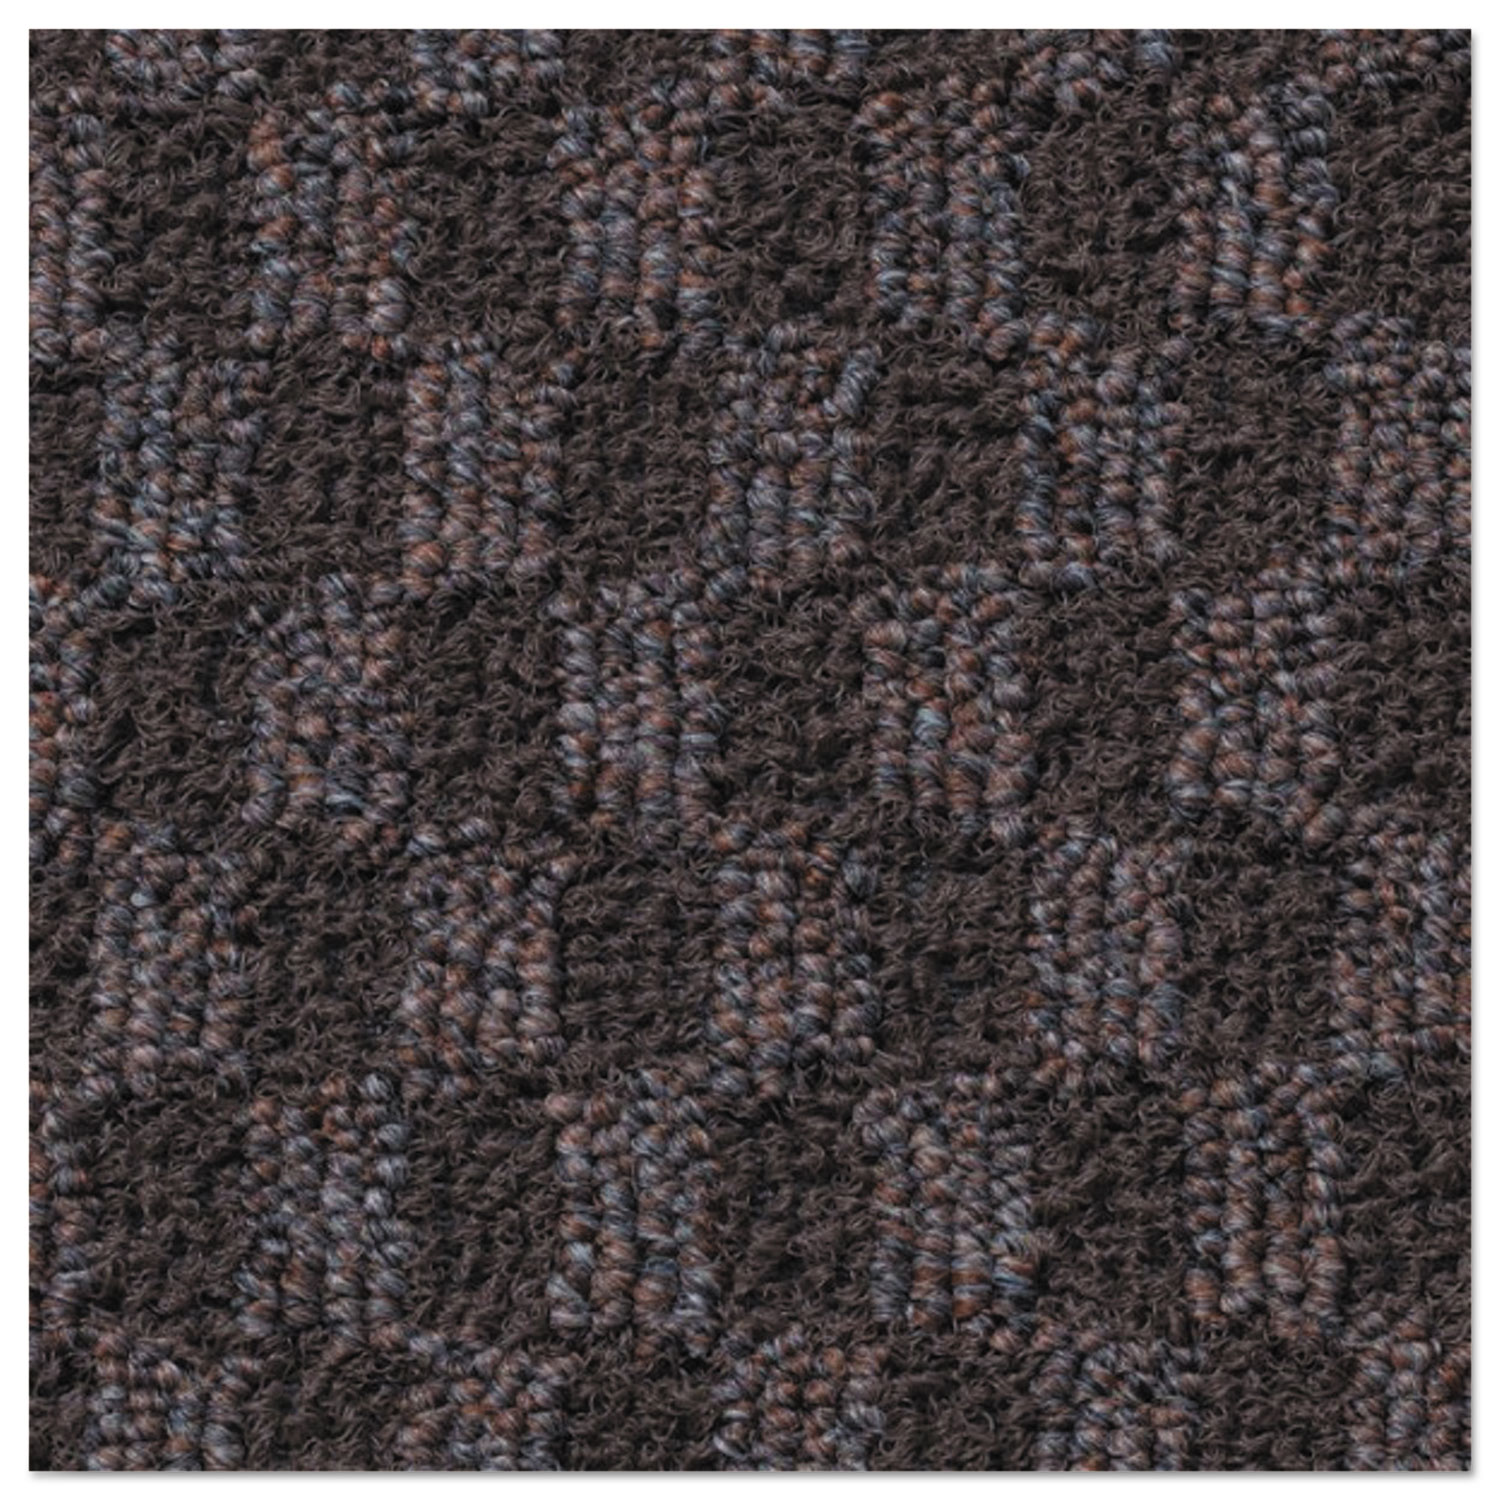 Nomad 6500 Carpet Matting, Polypropylene, 48 x 72, Brown